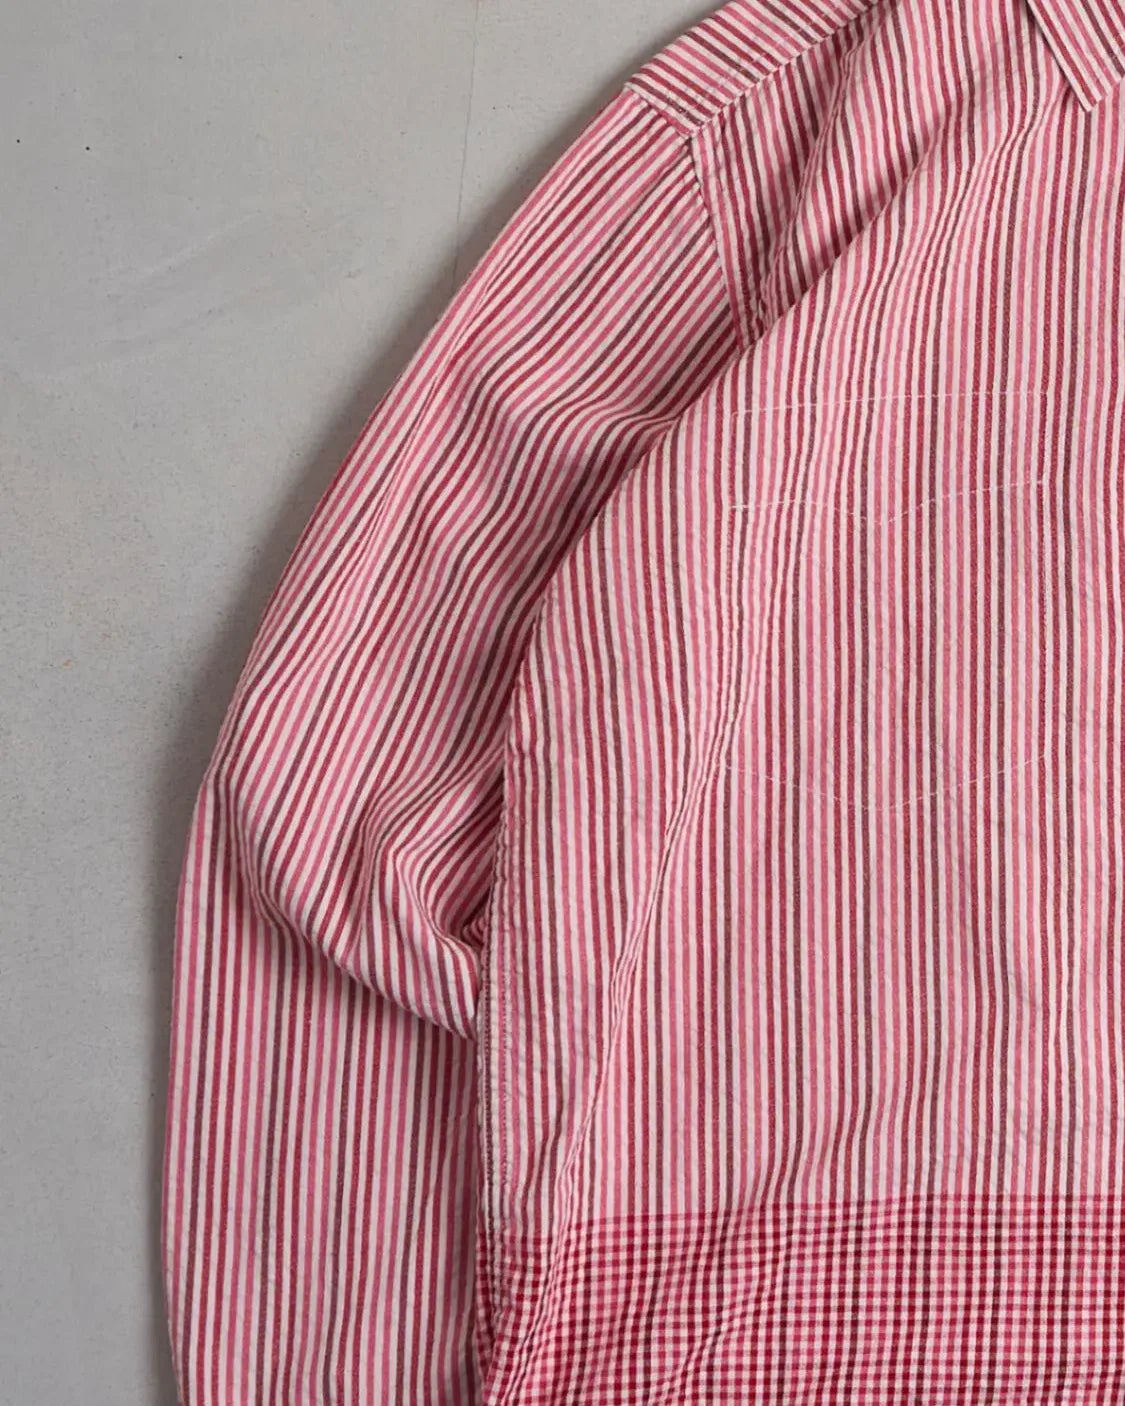 Vintage Wrangler Shirt Left